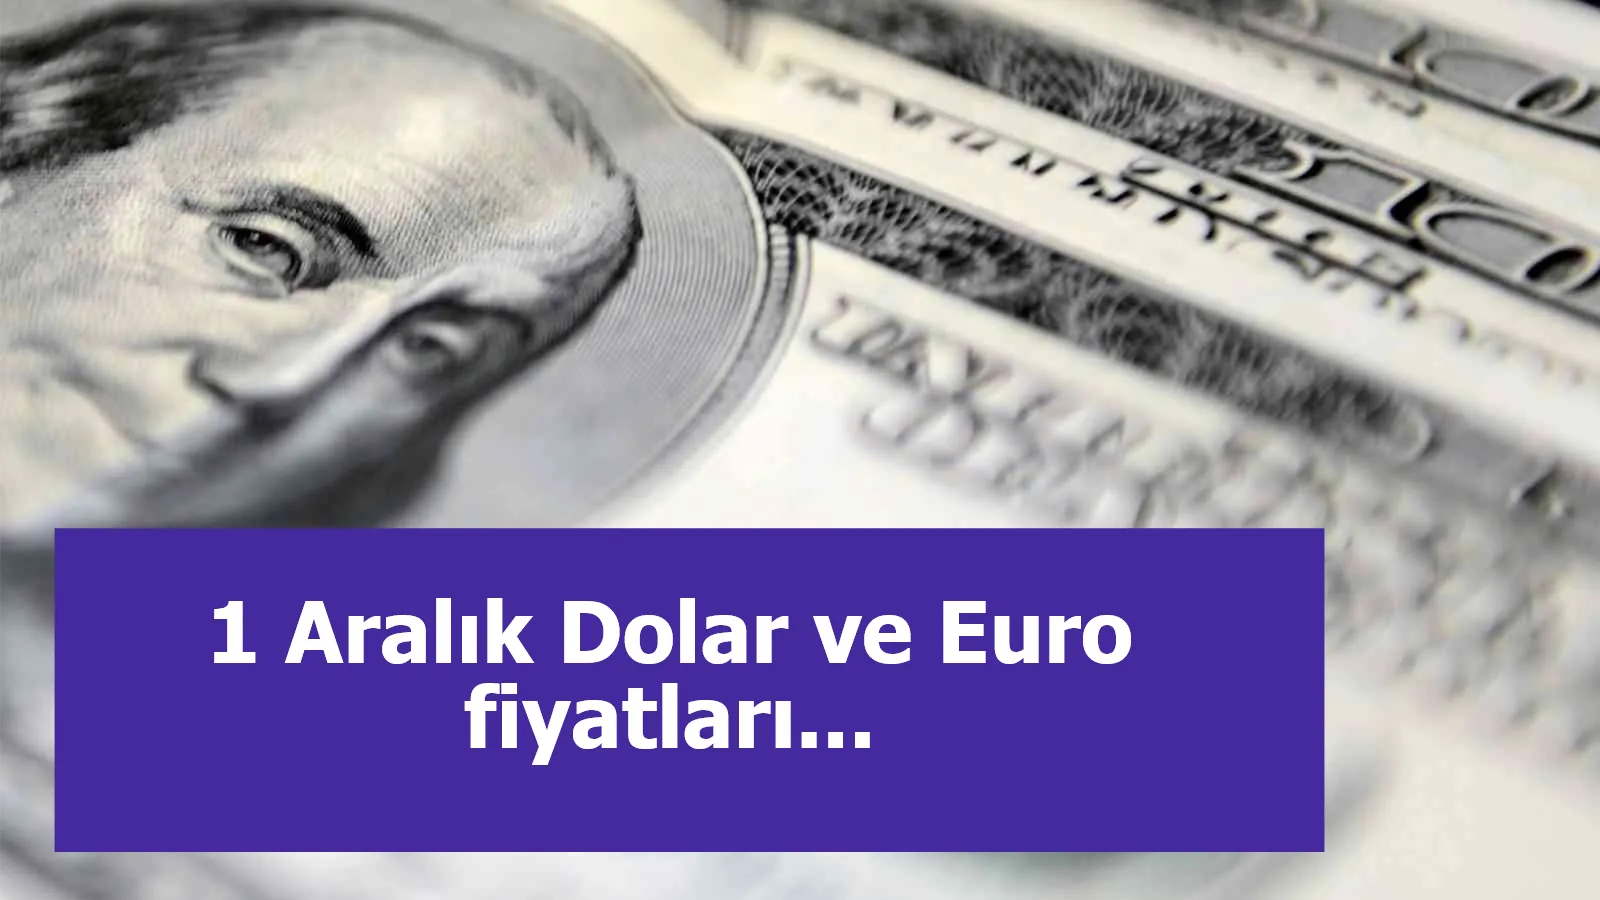 1 Aralık Dolar ve Euro fiyatları...